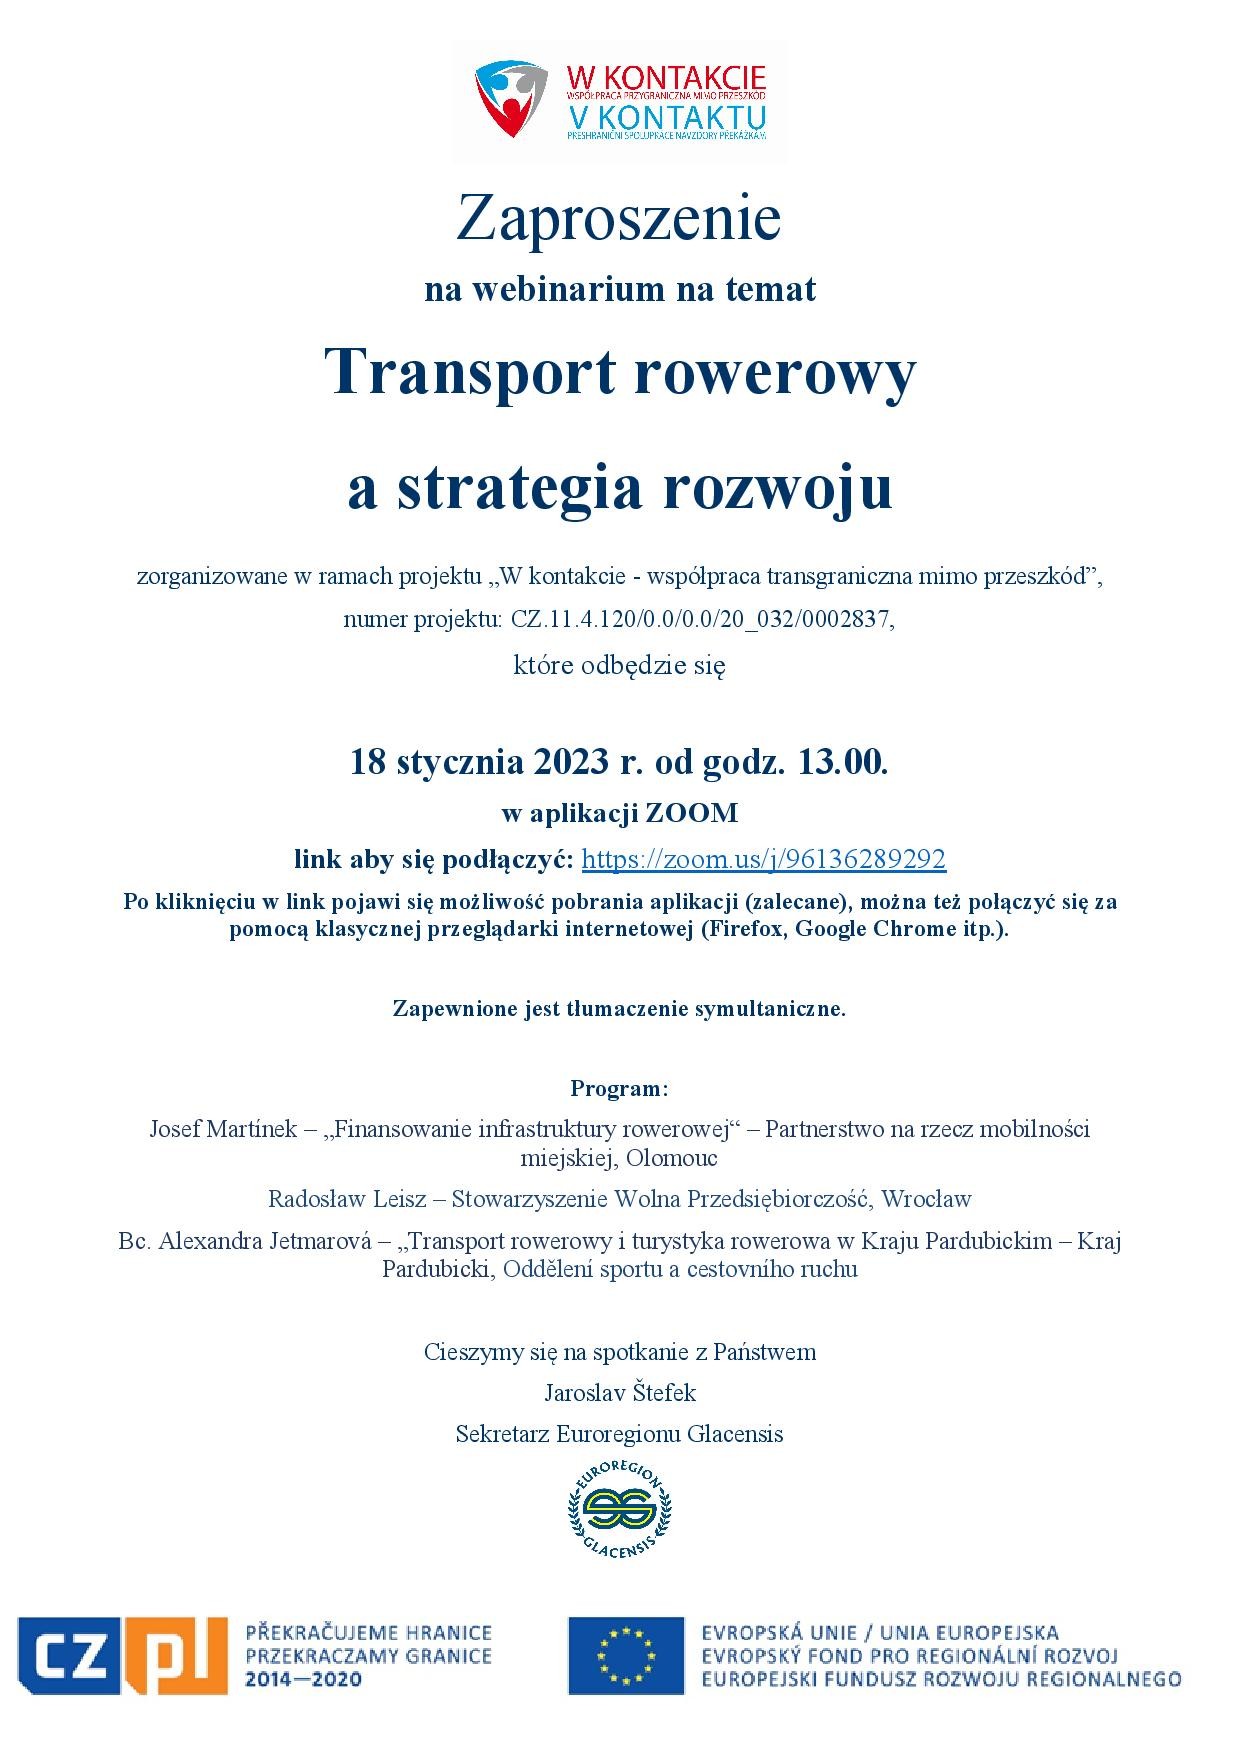 Zaproszenie_Transport rowerowy a strategia rozwoju_18.1.2023